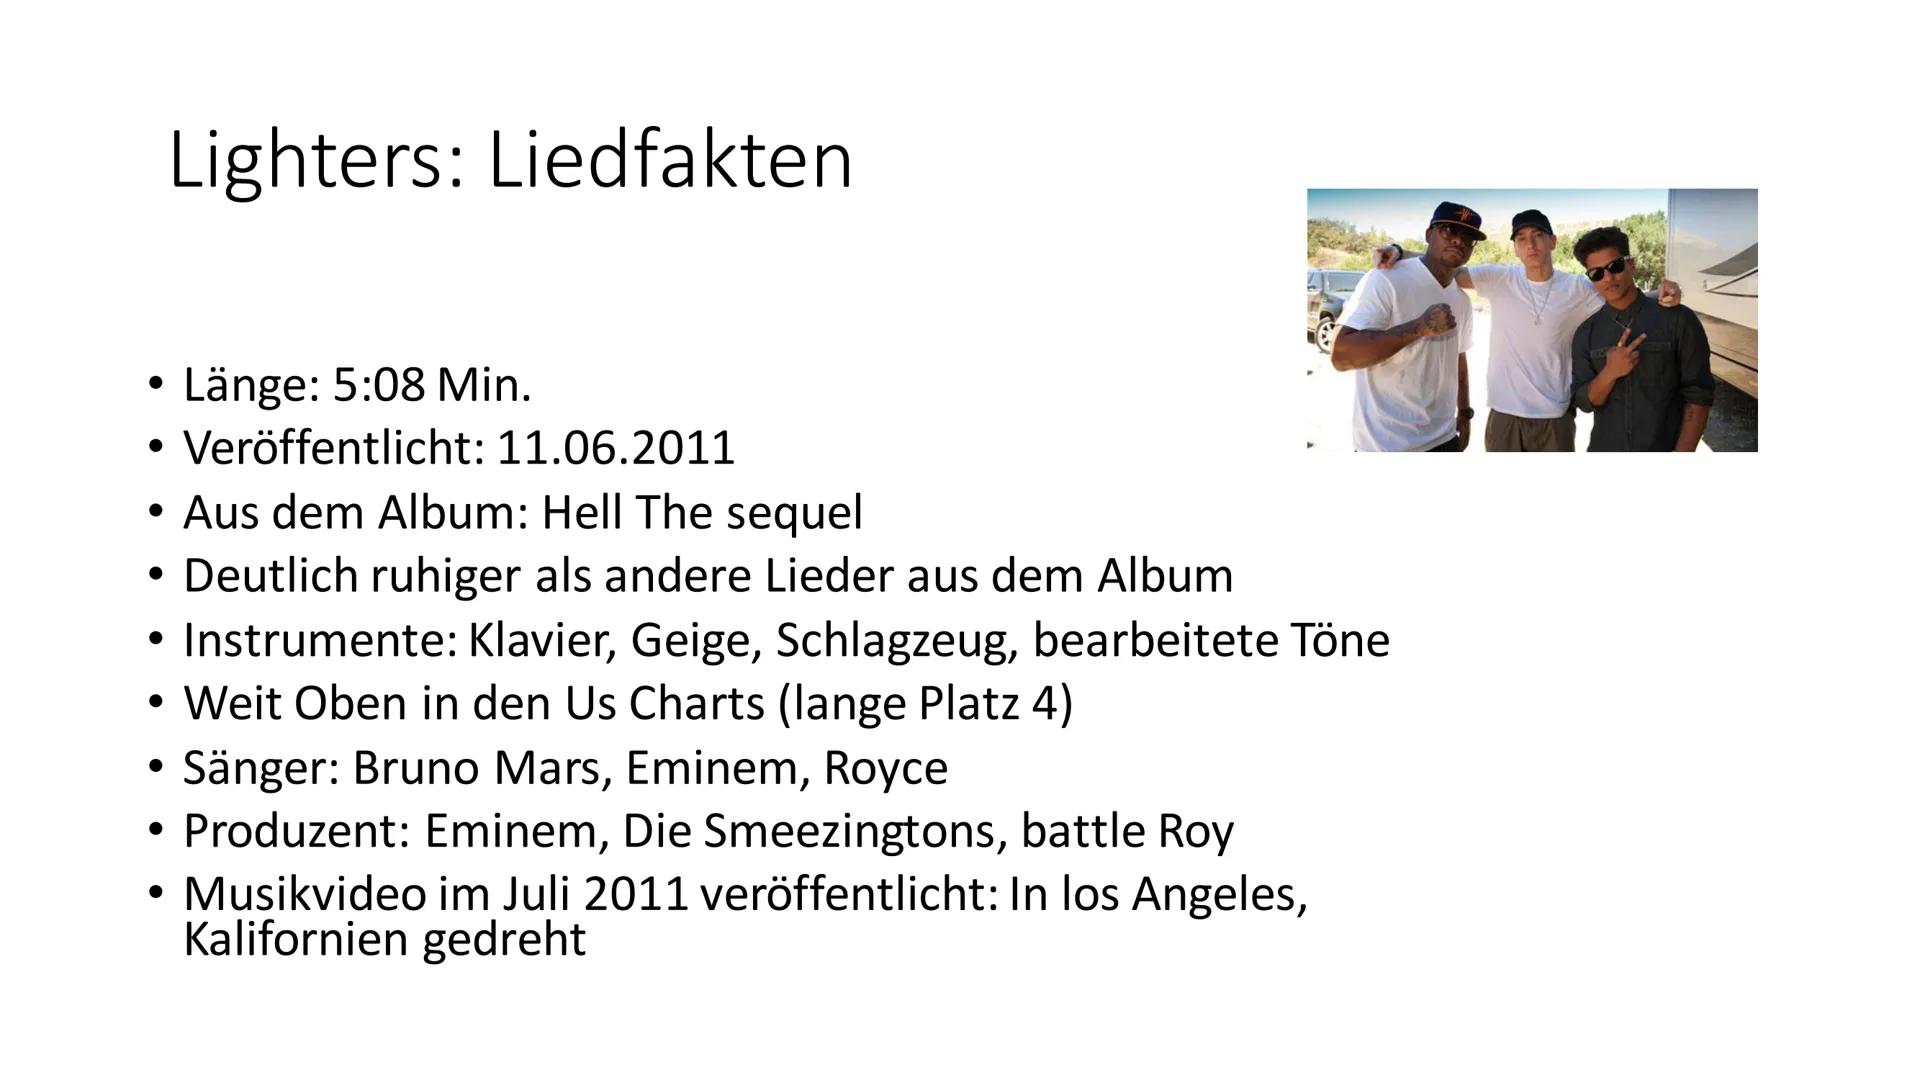 Eminem
5x Inhaltsverzeichnis
●
●
●
●
●
●
●
Steckbrief
Lebenslauf
Alben
Liedfakten
Lyrics
Songanalyse
Unsere Meinung
Quellen
Ende Steckbrief
